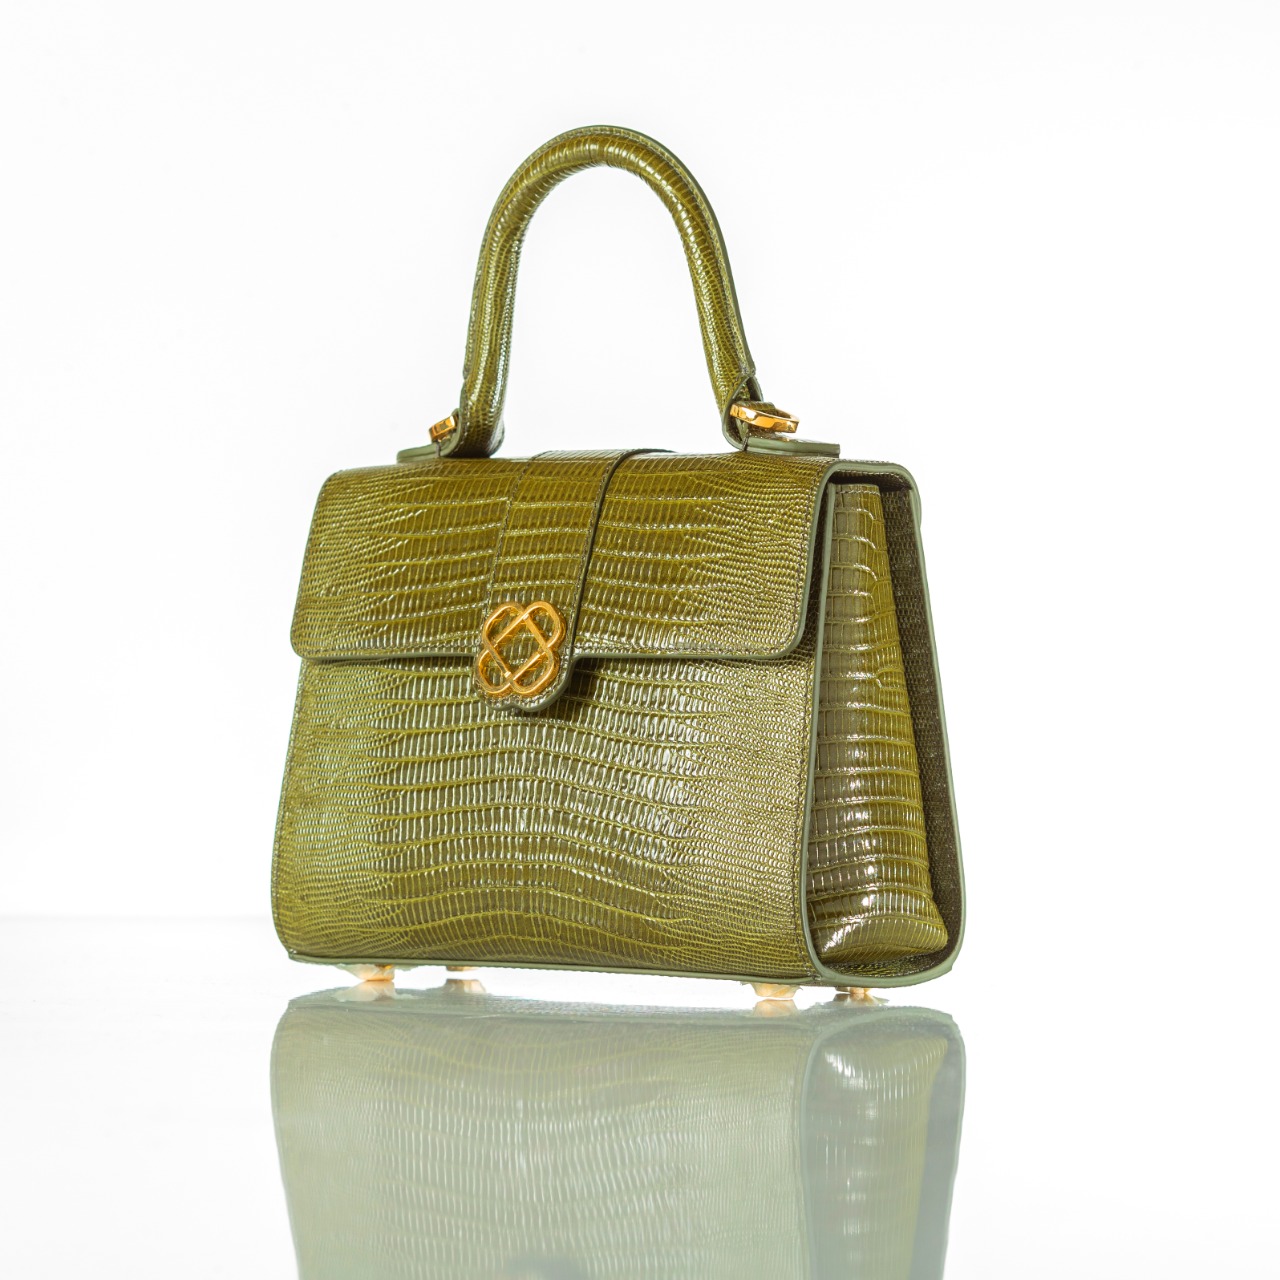 Buy OBH Ladies Handbag 6 Model Green Lizard color Online in UAE | OBH ...